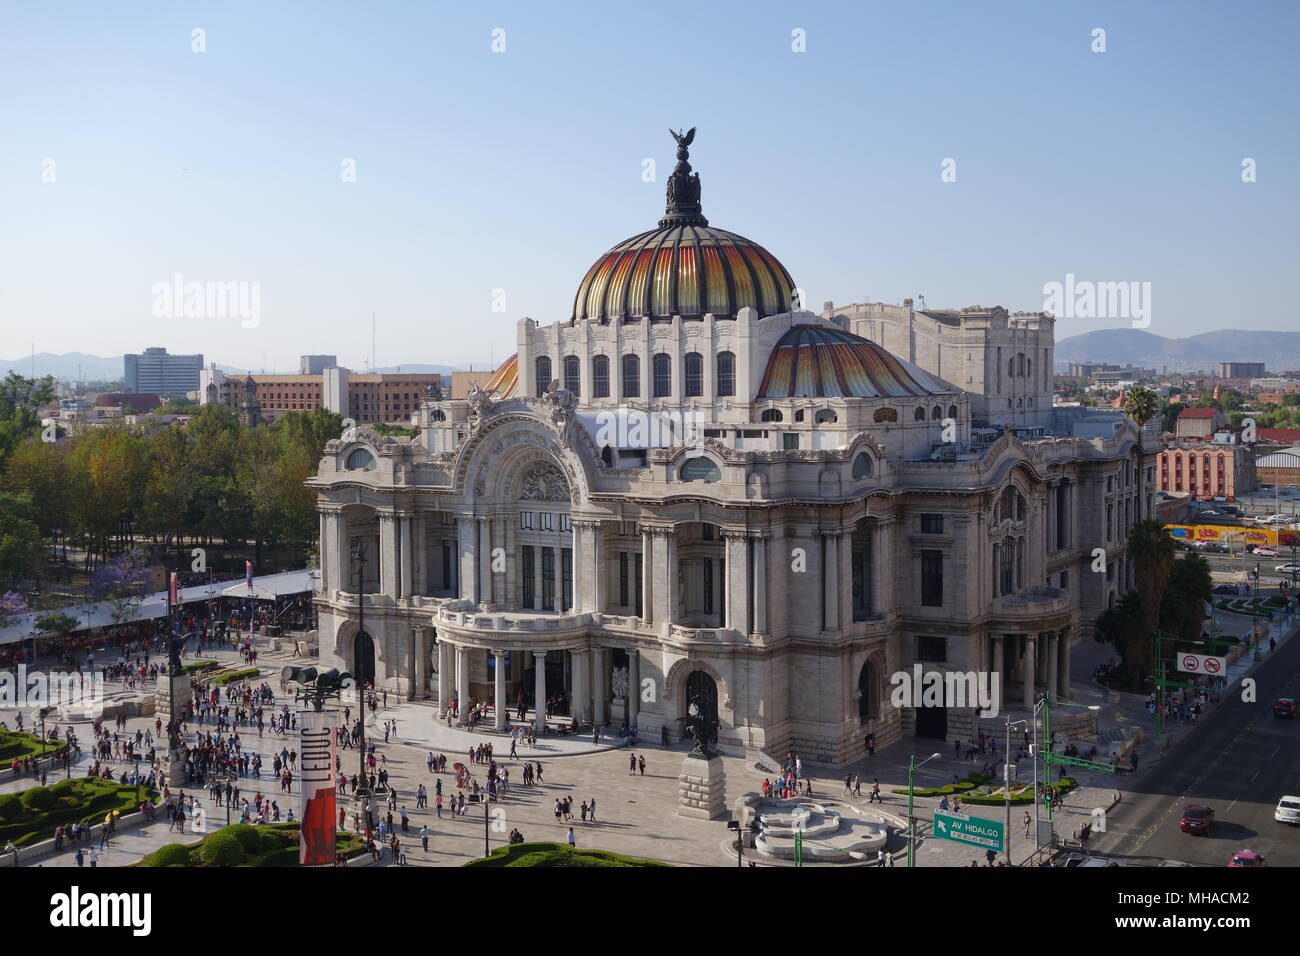 Palacio de Bellas Artes (Palace of Fine Arts) in Mexico City Stock Photo